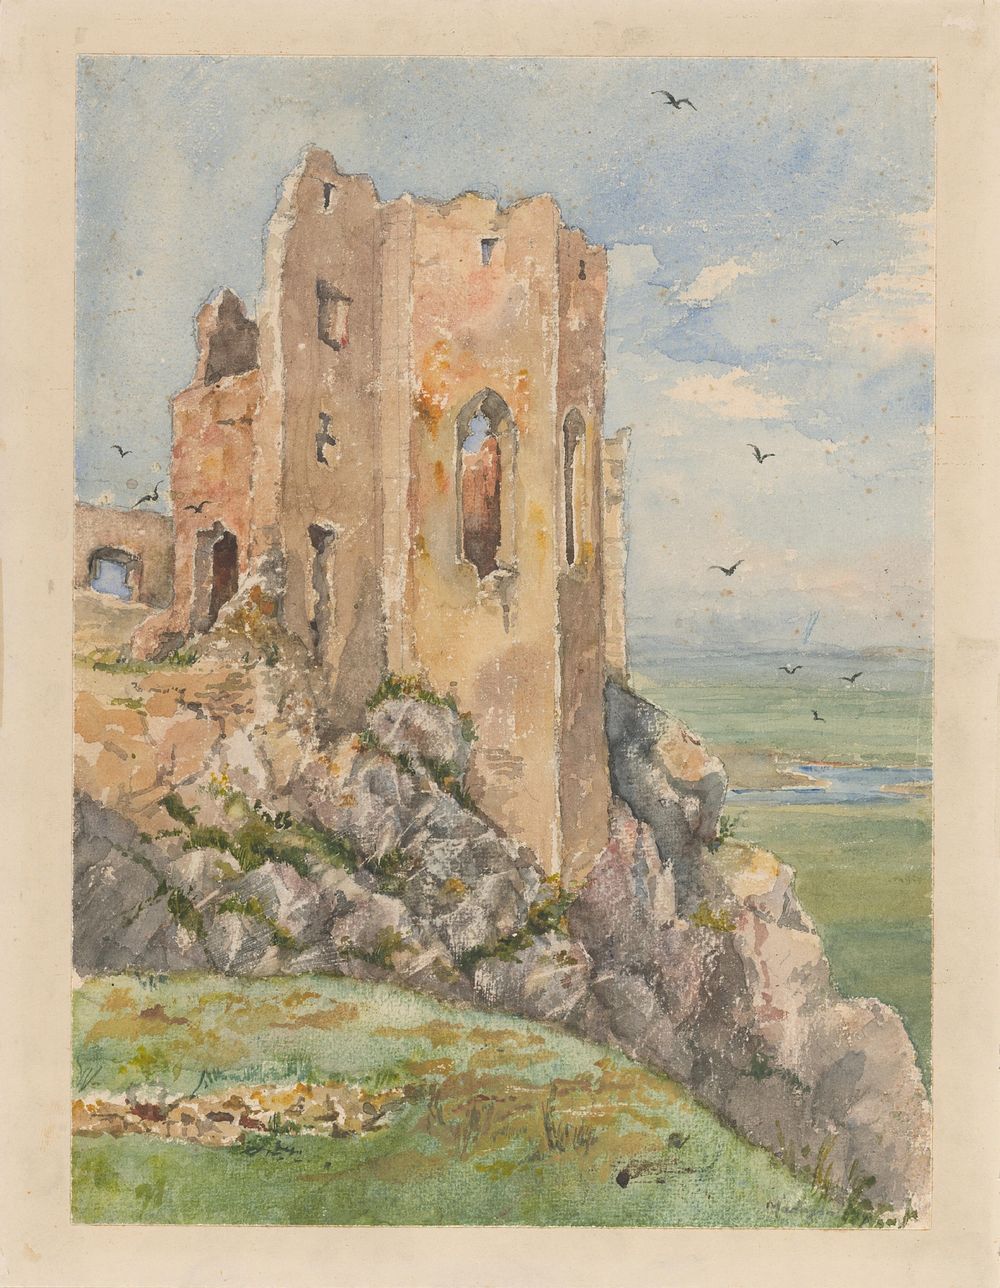 Beck's castle ruins by László Mednyánszky